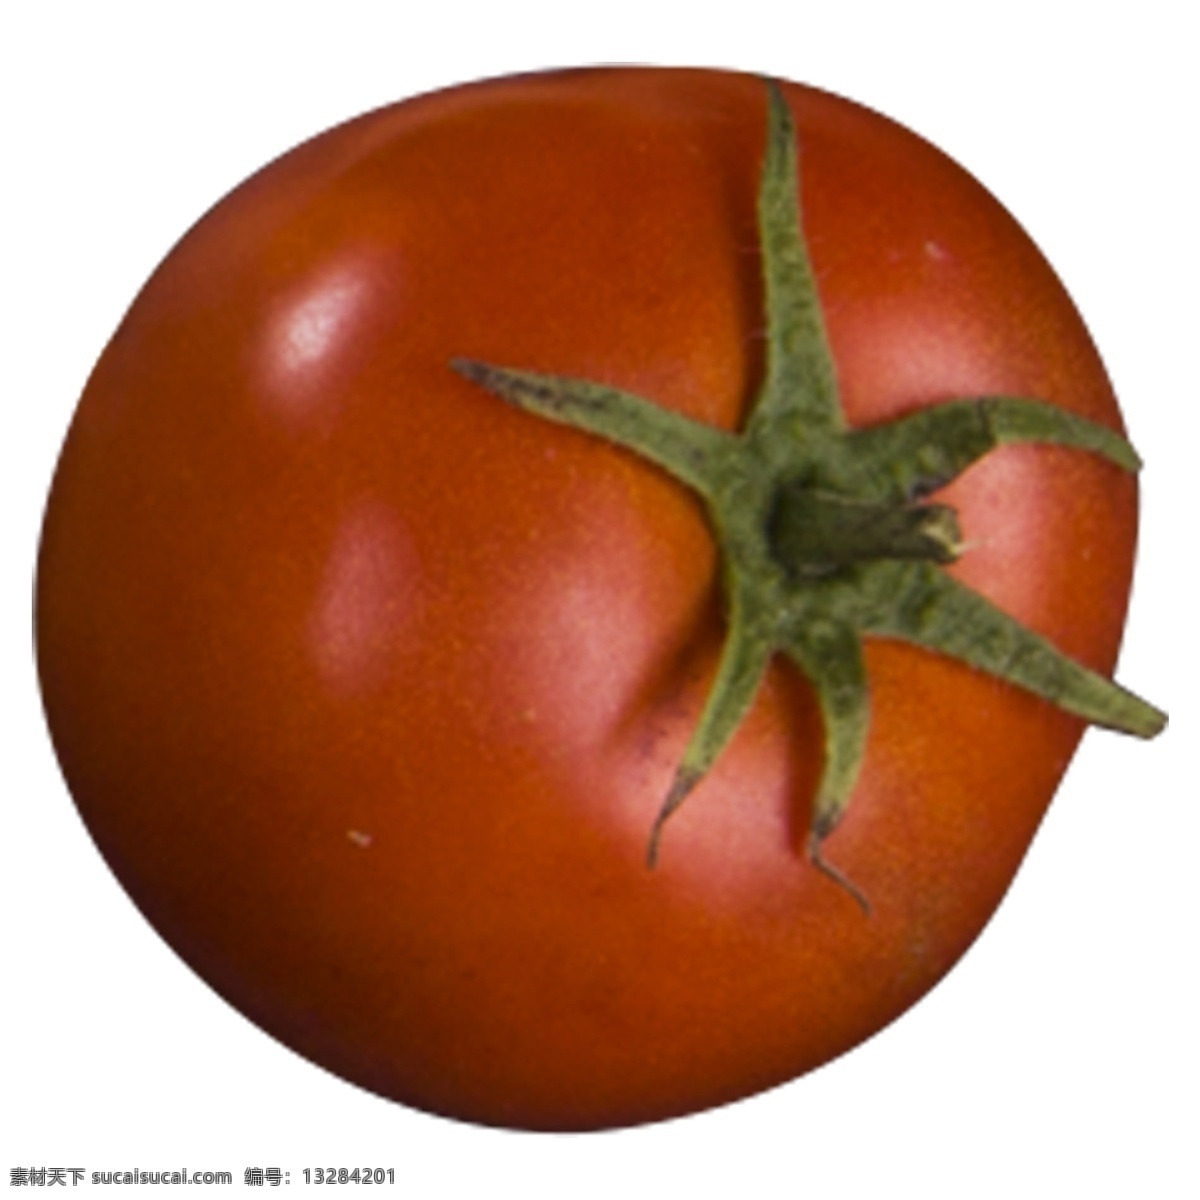 西红柿 实物 拍摄 番茄 蔬菜 厨房 营养 配菜 炊具配图 新鲜 美味 酸酸甜甜 可口 西红柿实拍